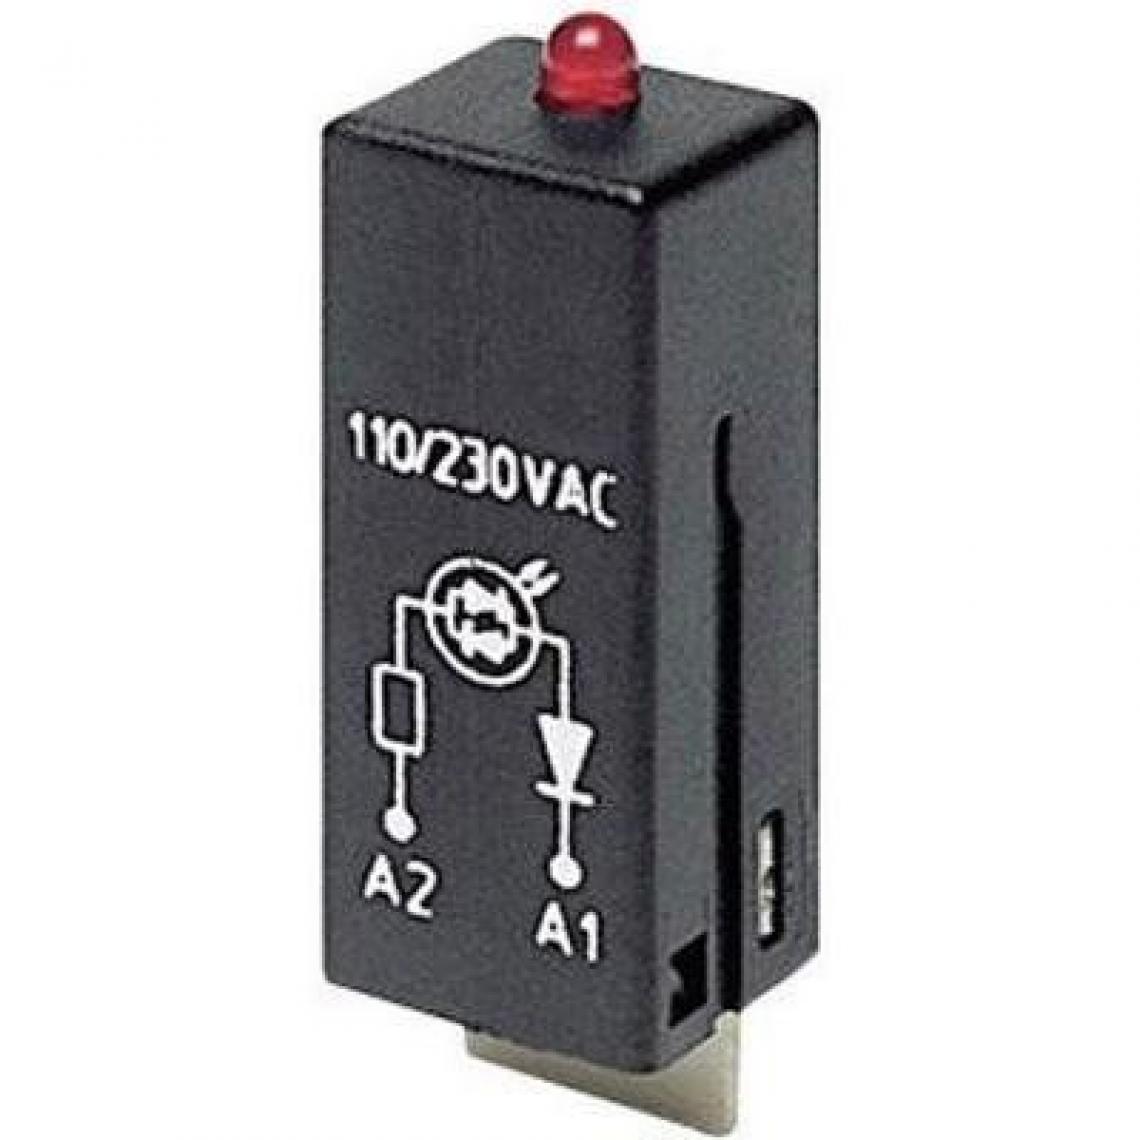 Inconnu - Module enfichable avec LED, avec diode de protection TE Connectivity 5-1415036-1 Couleur d'éclairage: rouge 1 pc(s) - Accessoires sécurité connectée